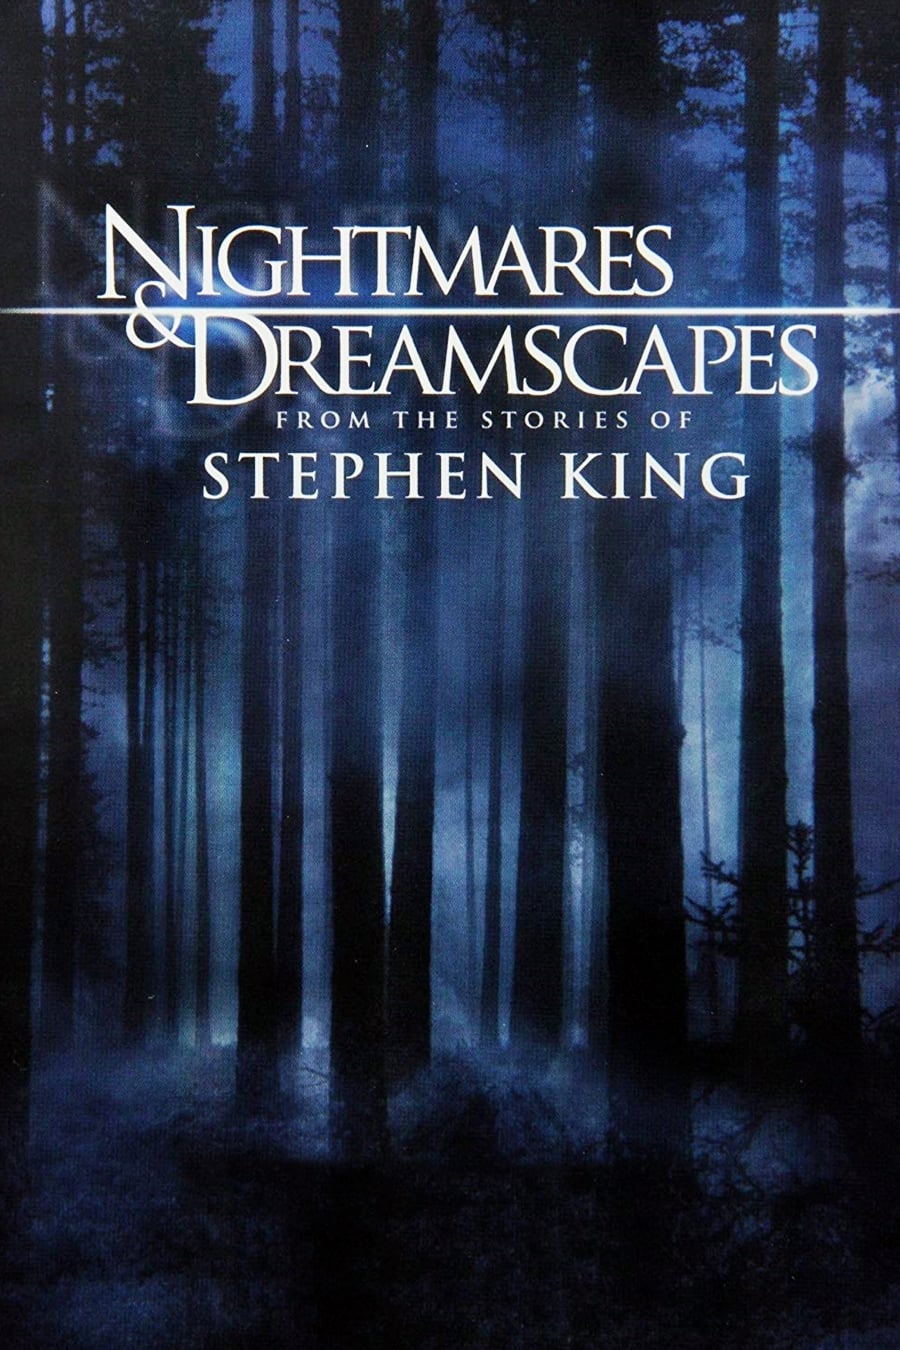 Stephen King's Alpträume